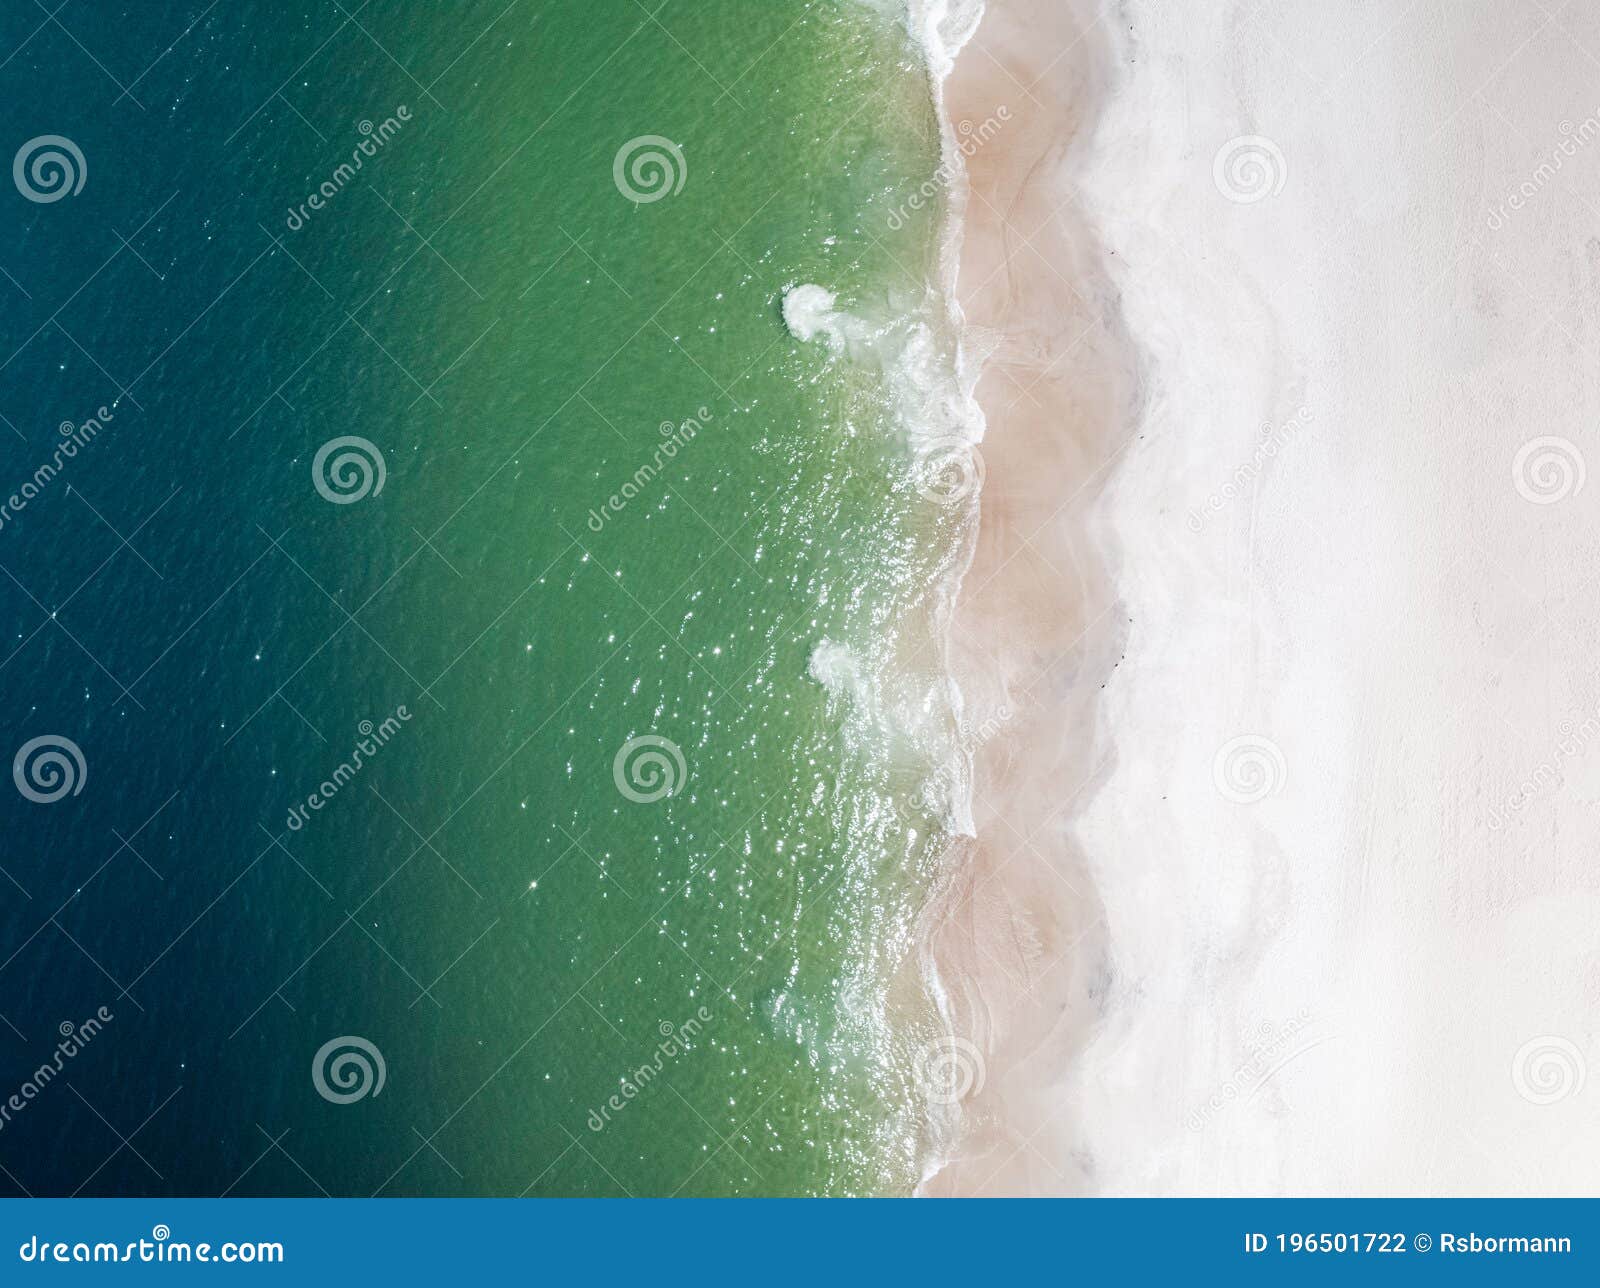 zenital view from a brazilian beach